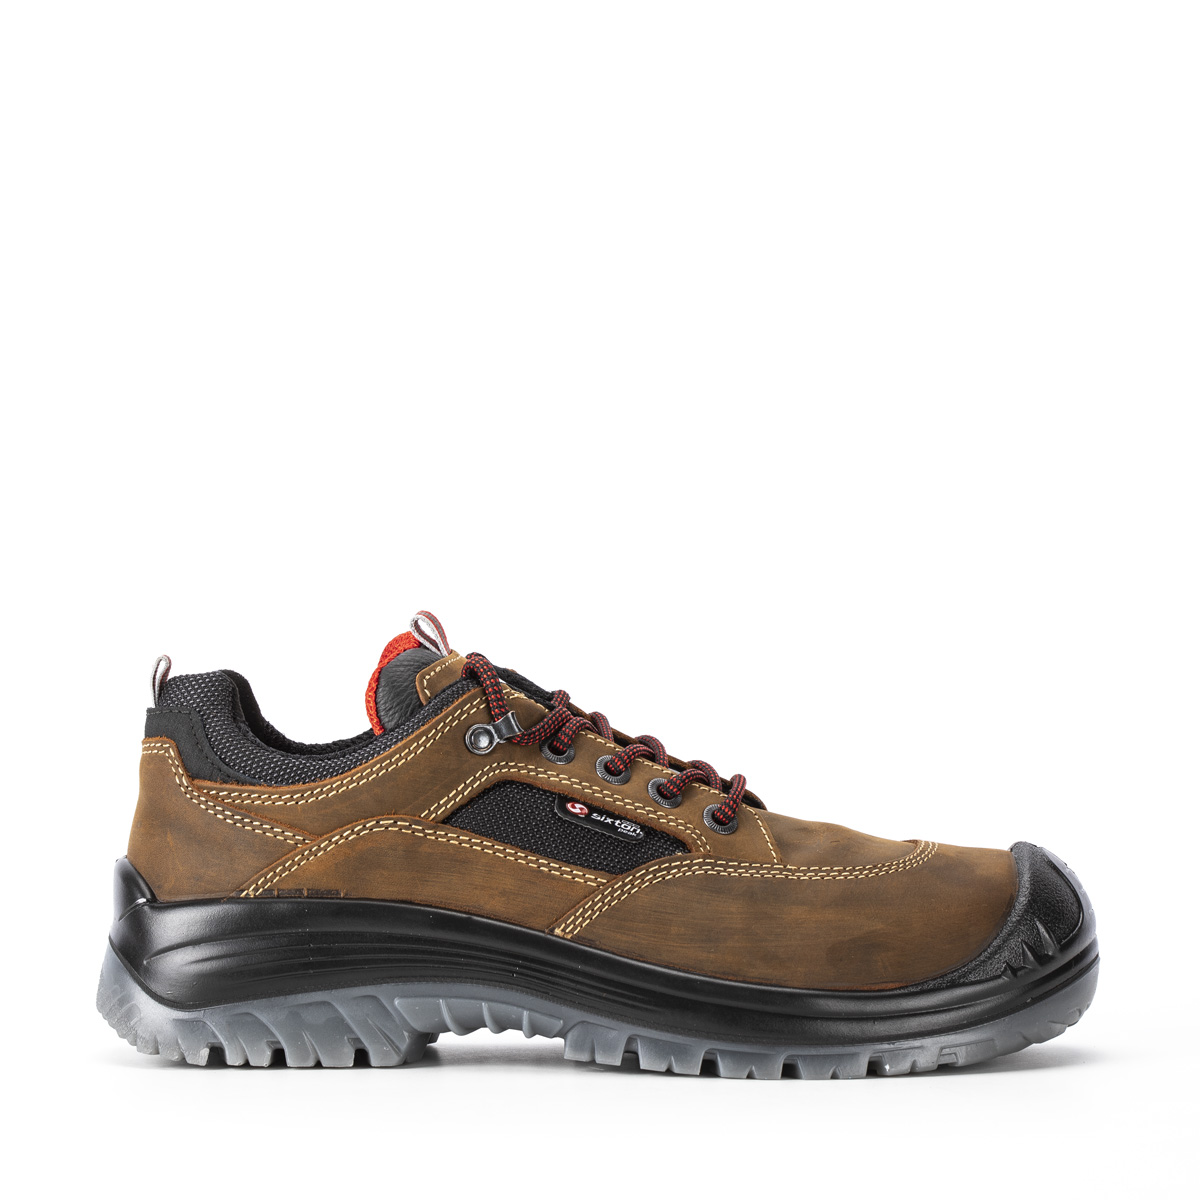 Endurance LAND - con Safety Shoes Halbschuh SRC classe Sixton modello Codice 81153-01L - protezione S3 di Peak